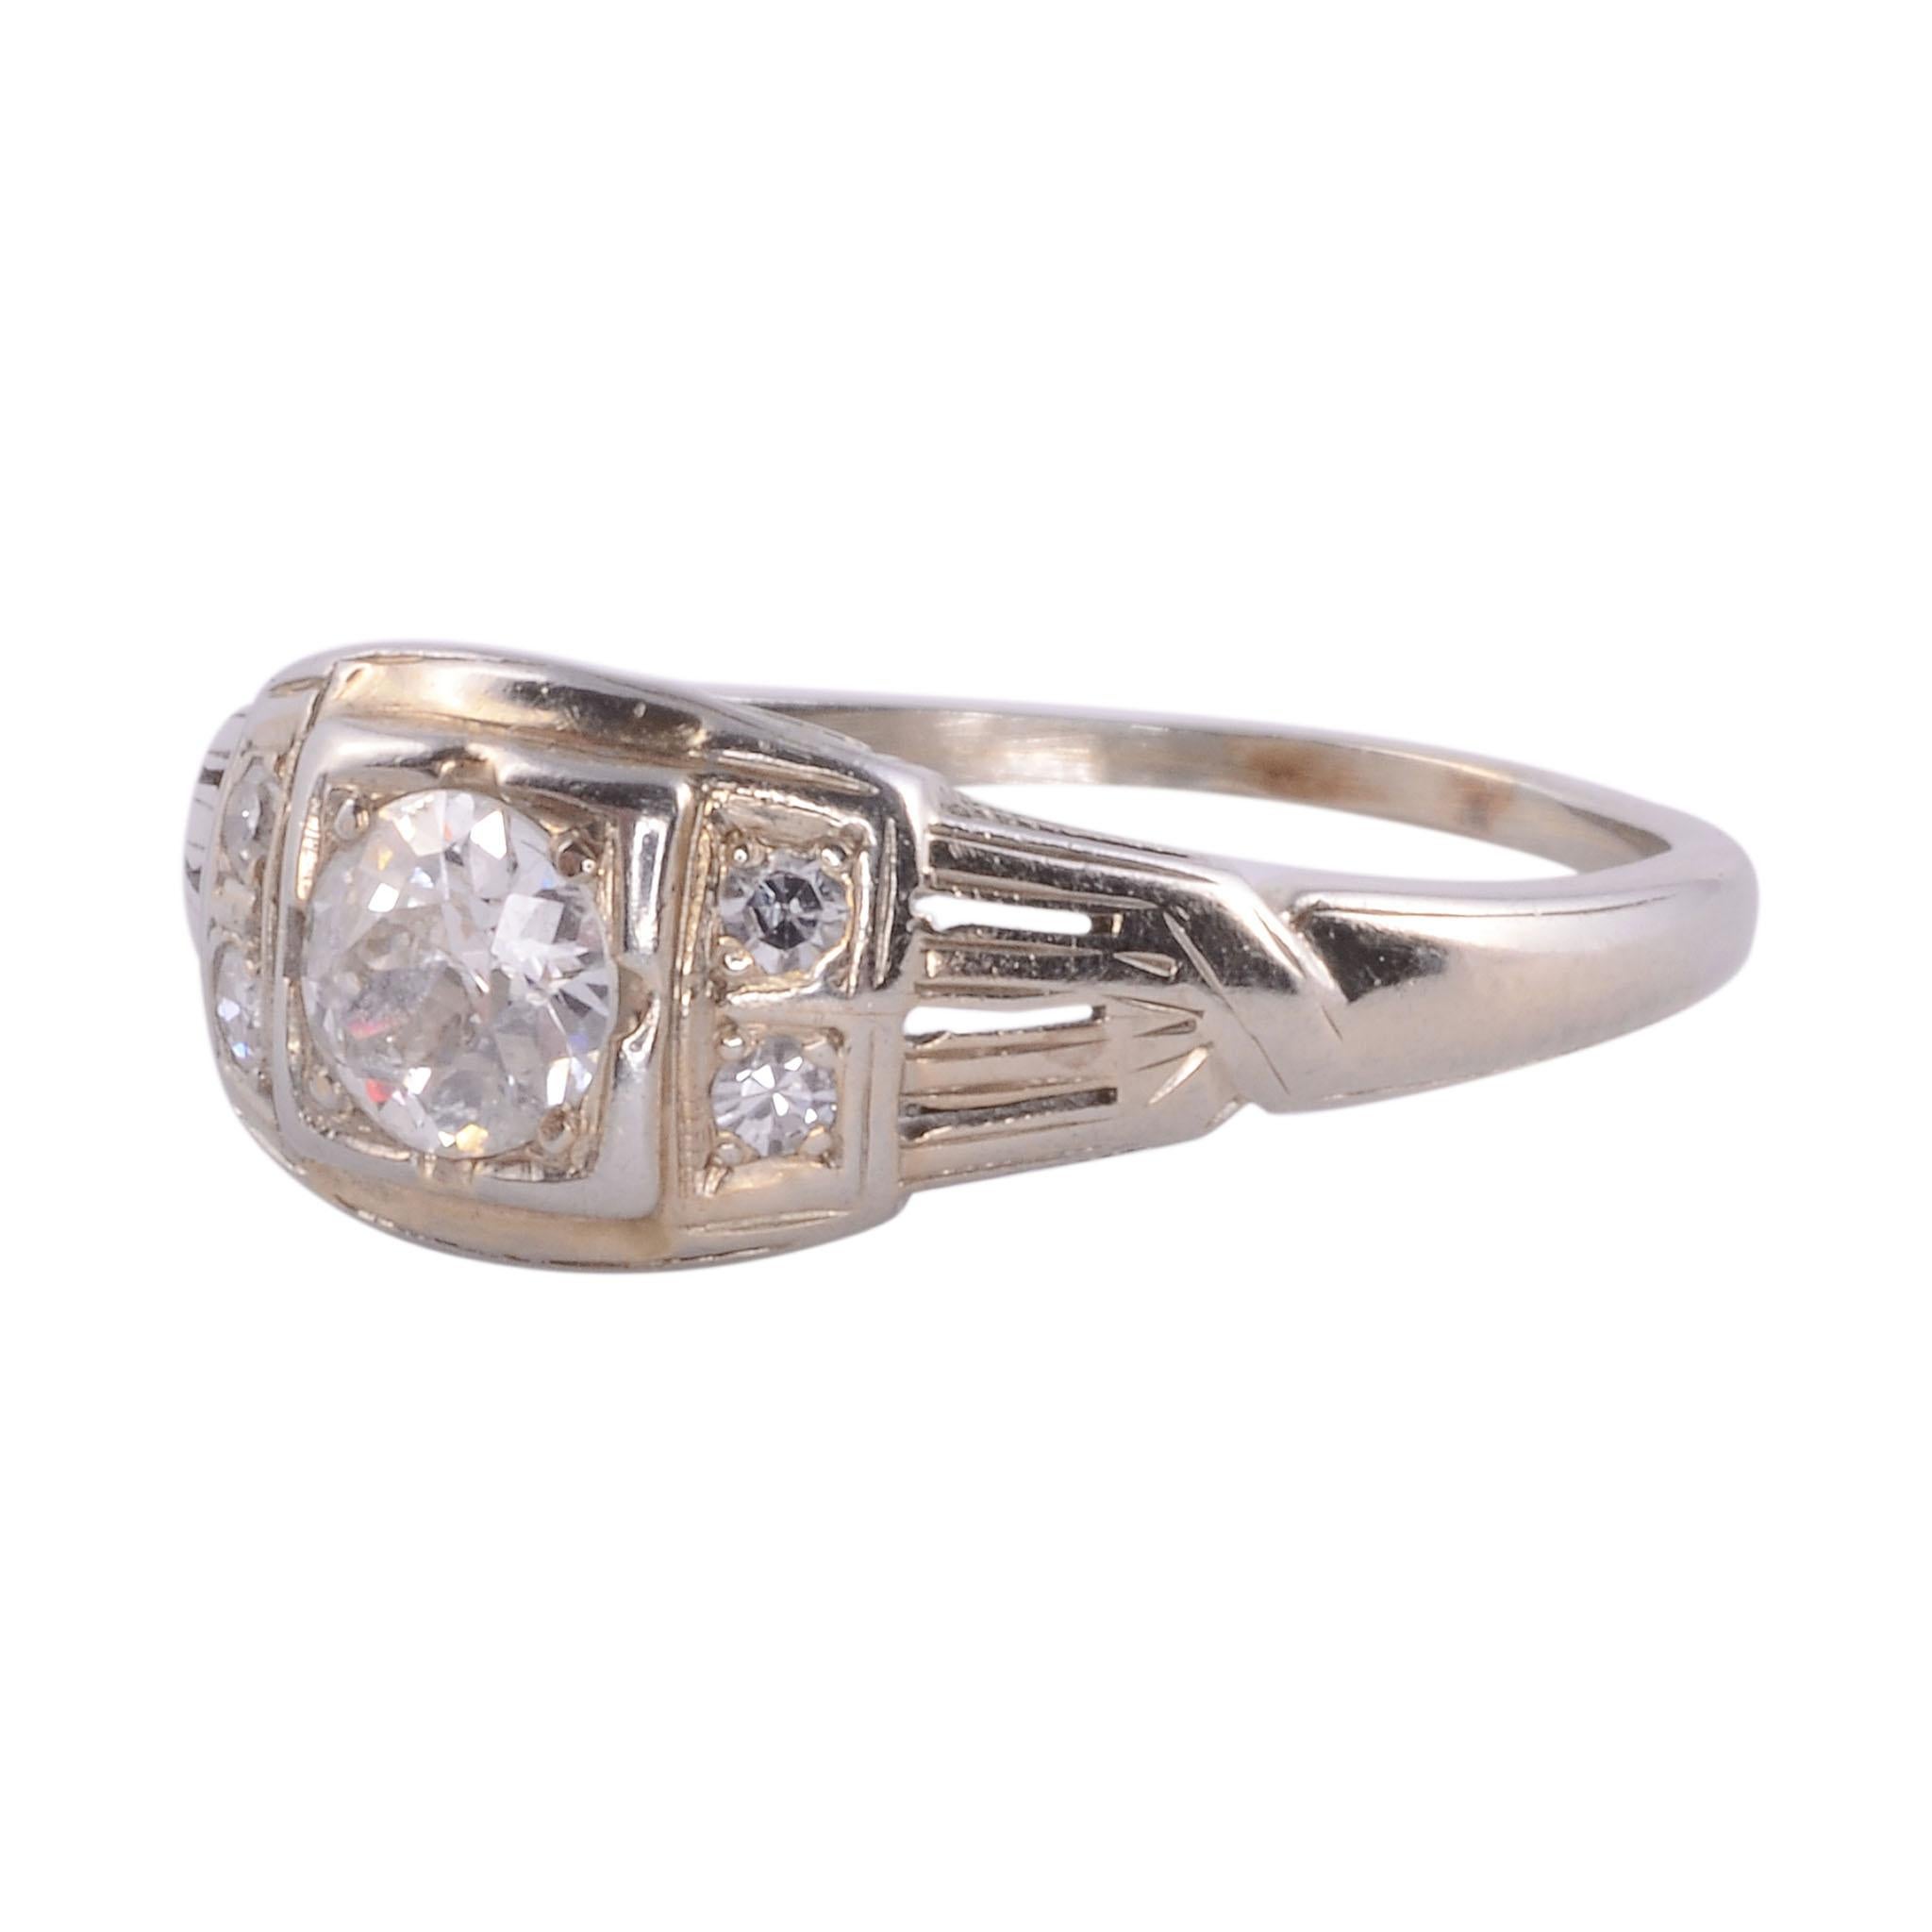 Vintage-Diamantring mit altem Minenschliff, 18 KW, um 1930. Dieser Ring aus 18 Karat Weißgold hat einen Diamanten im Old-Mine-Schliff mit einem Gewicht von 0,36 Karat (I1 H) in der Mitte und vier seitliche Diamanten mit einem Gesamtgewicht von etwa